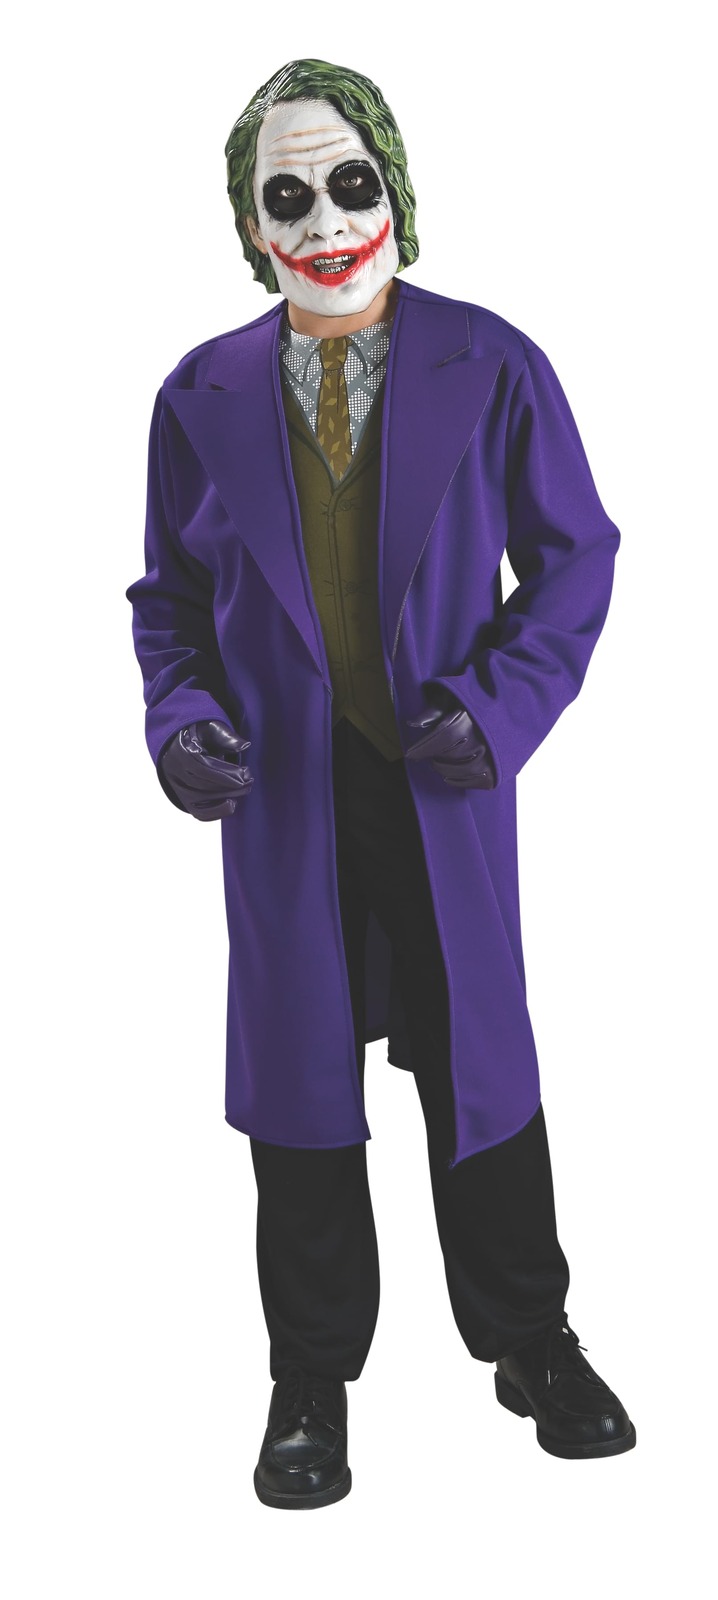 Buy The Joker Costume - Size S Online in Australia